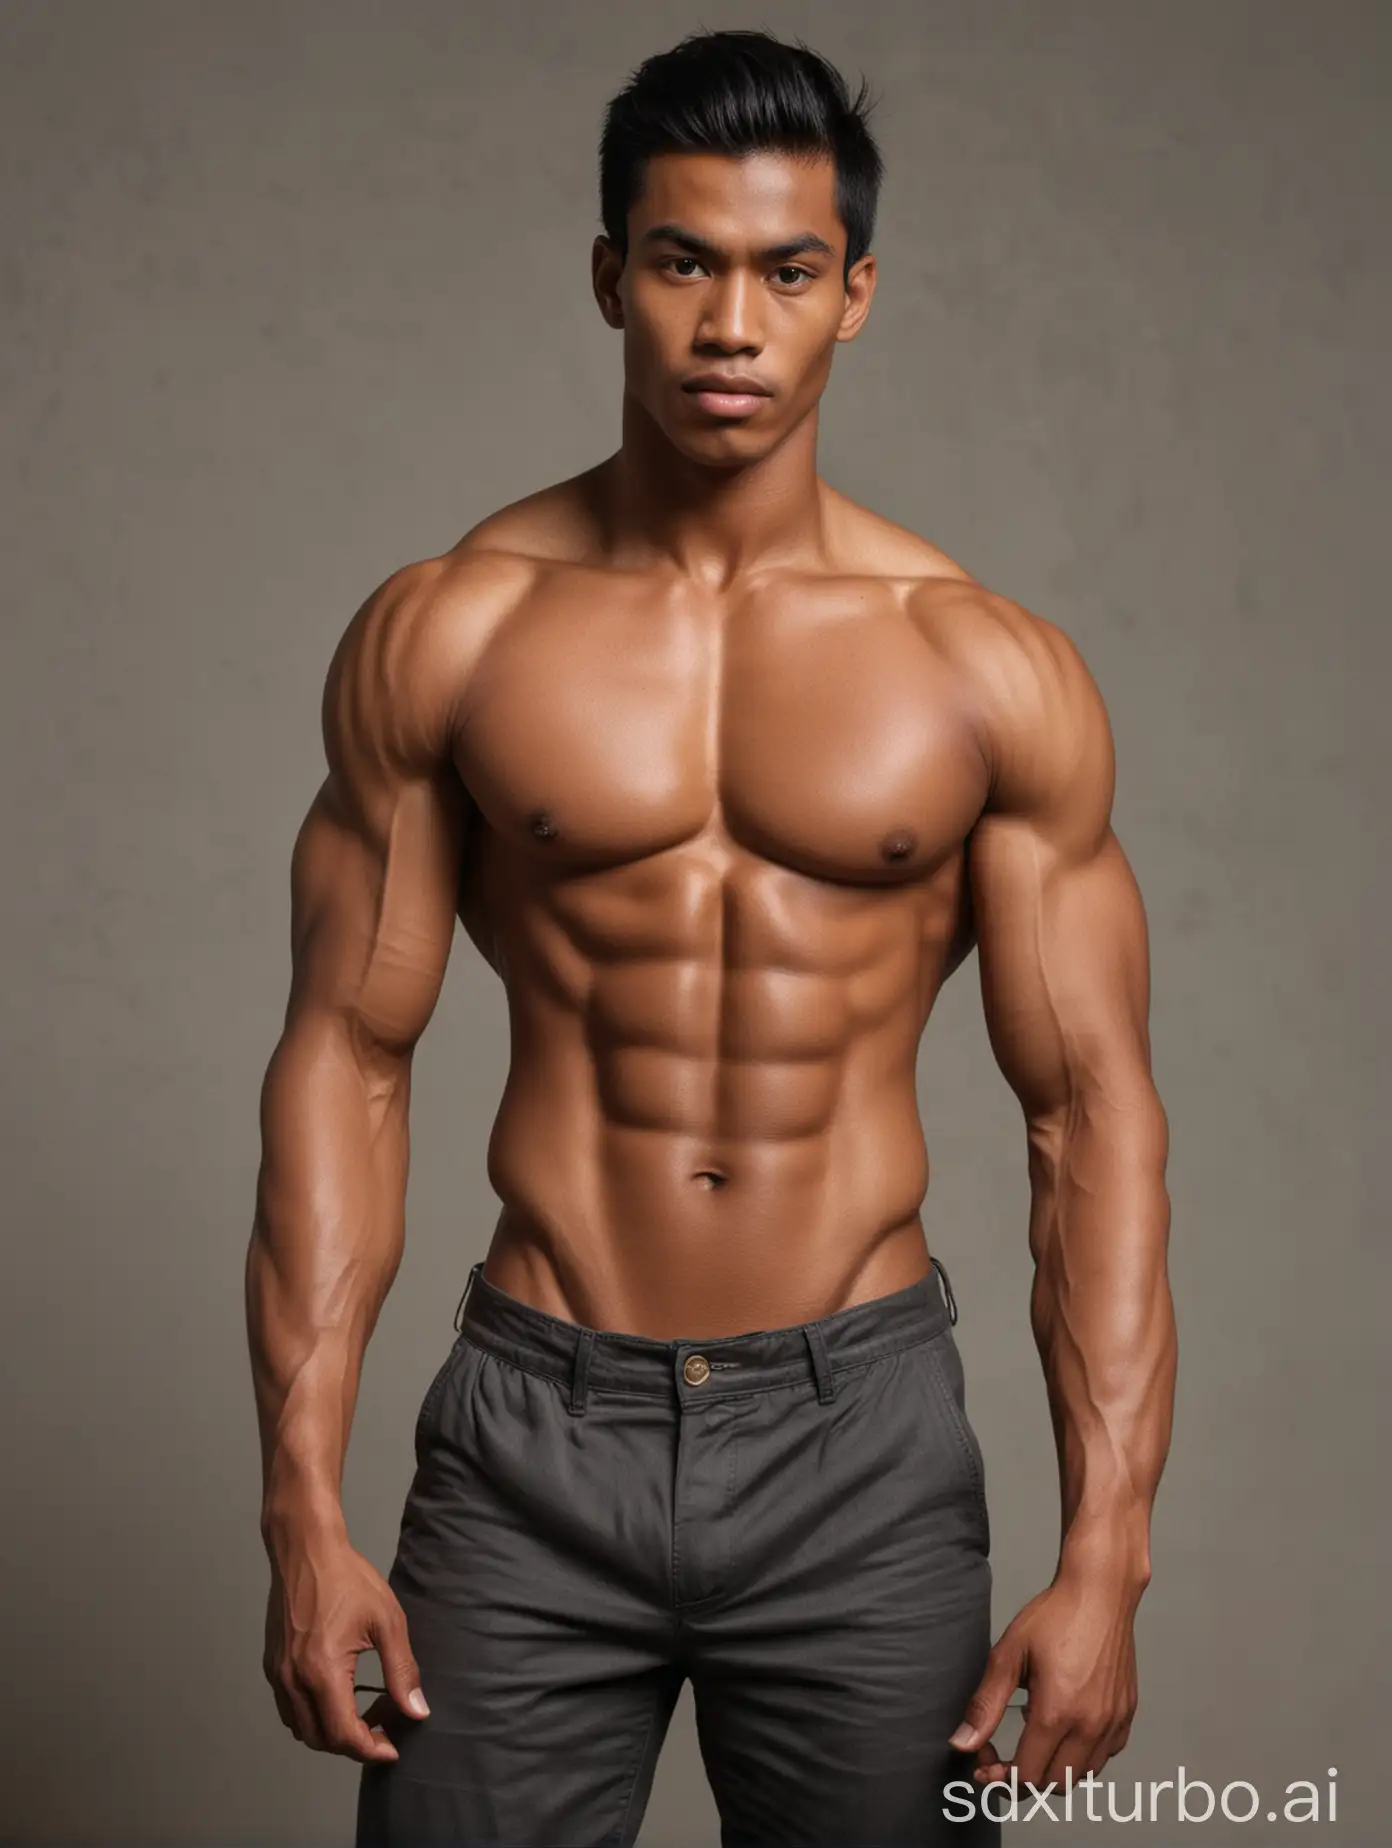 Muscular-Indonesian-Man-Embracing-Slim-AfricanAmerican-Partner